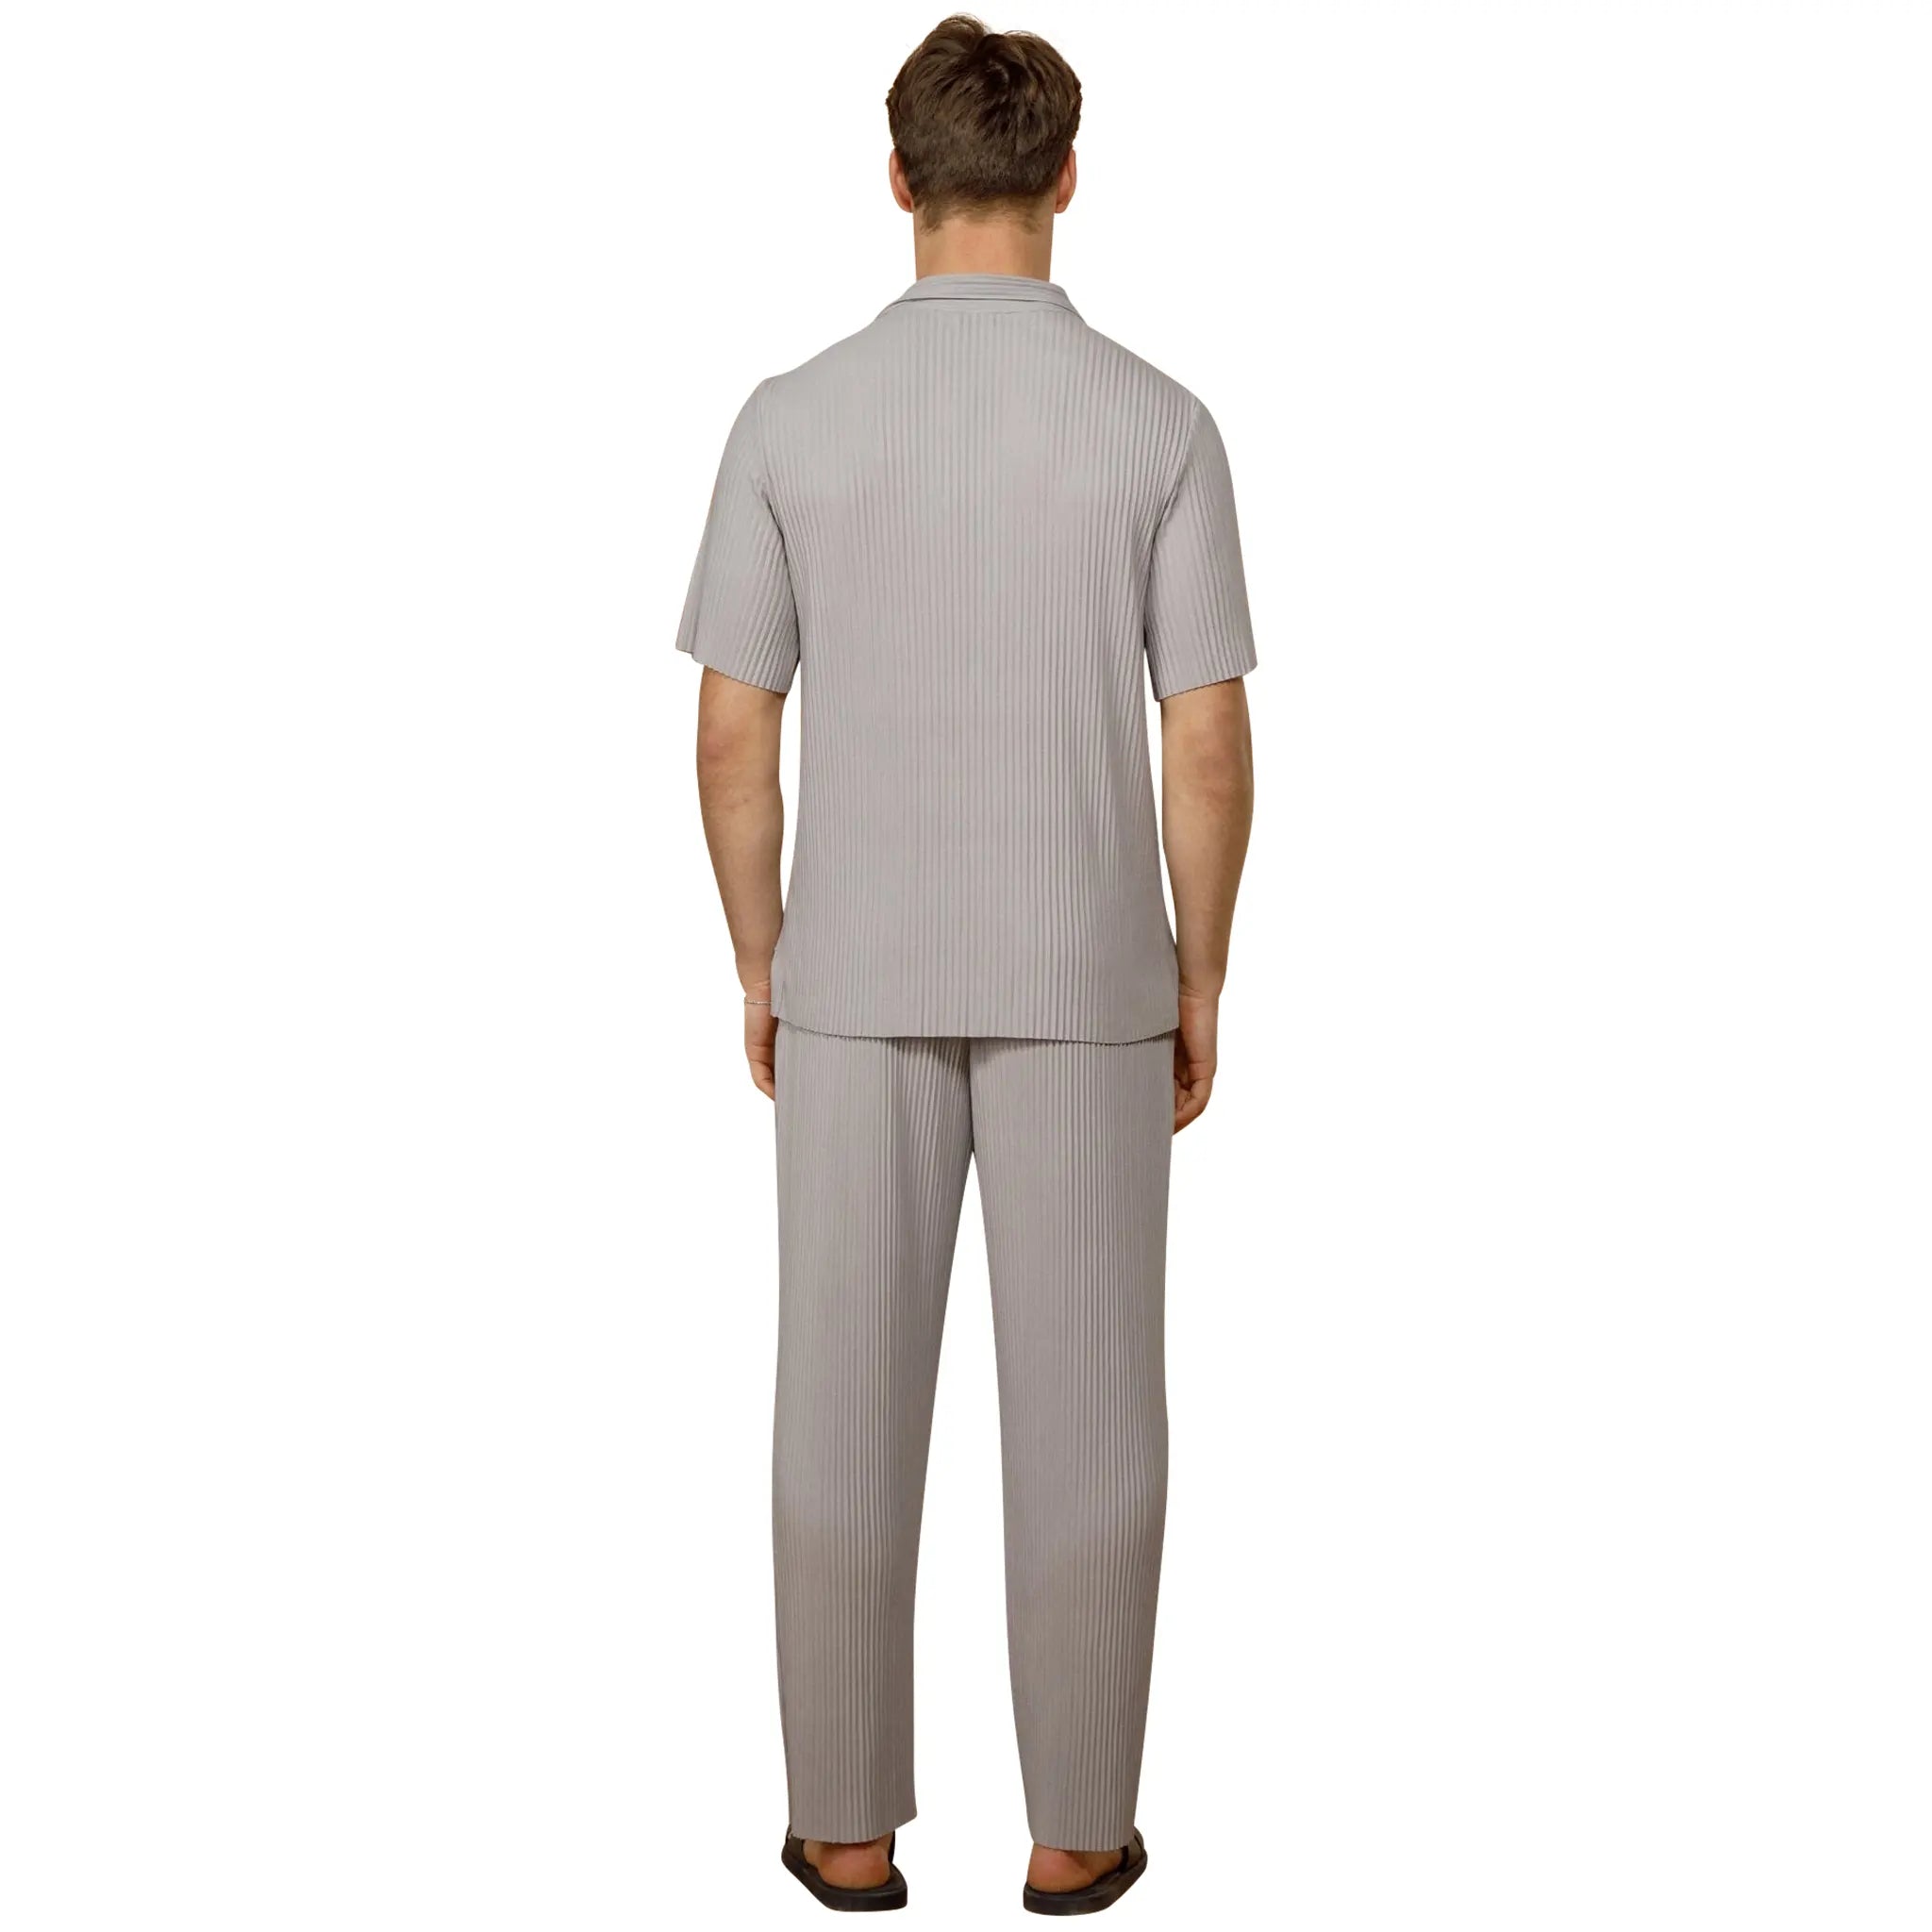 Model Back view of Belier Pleated Short Sleeve Light Grey Resort Shirt BM-073